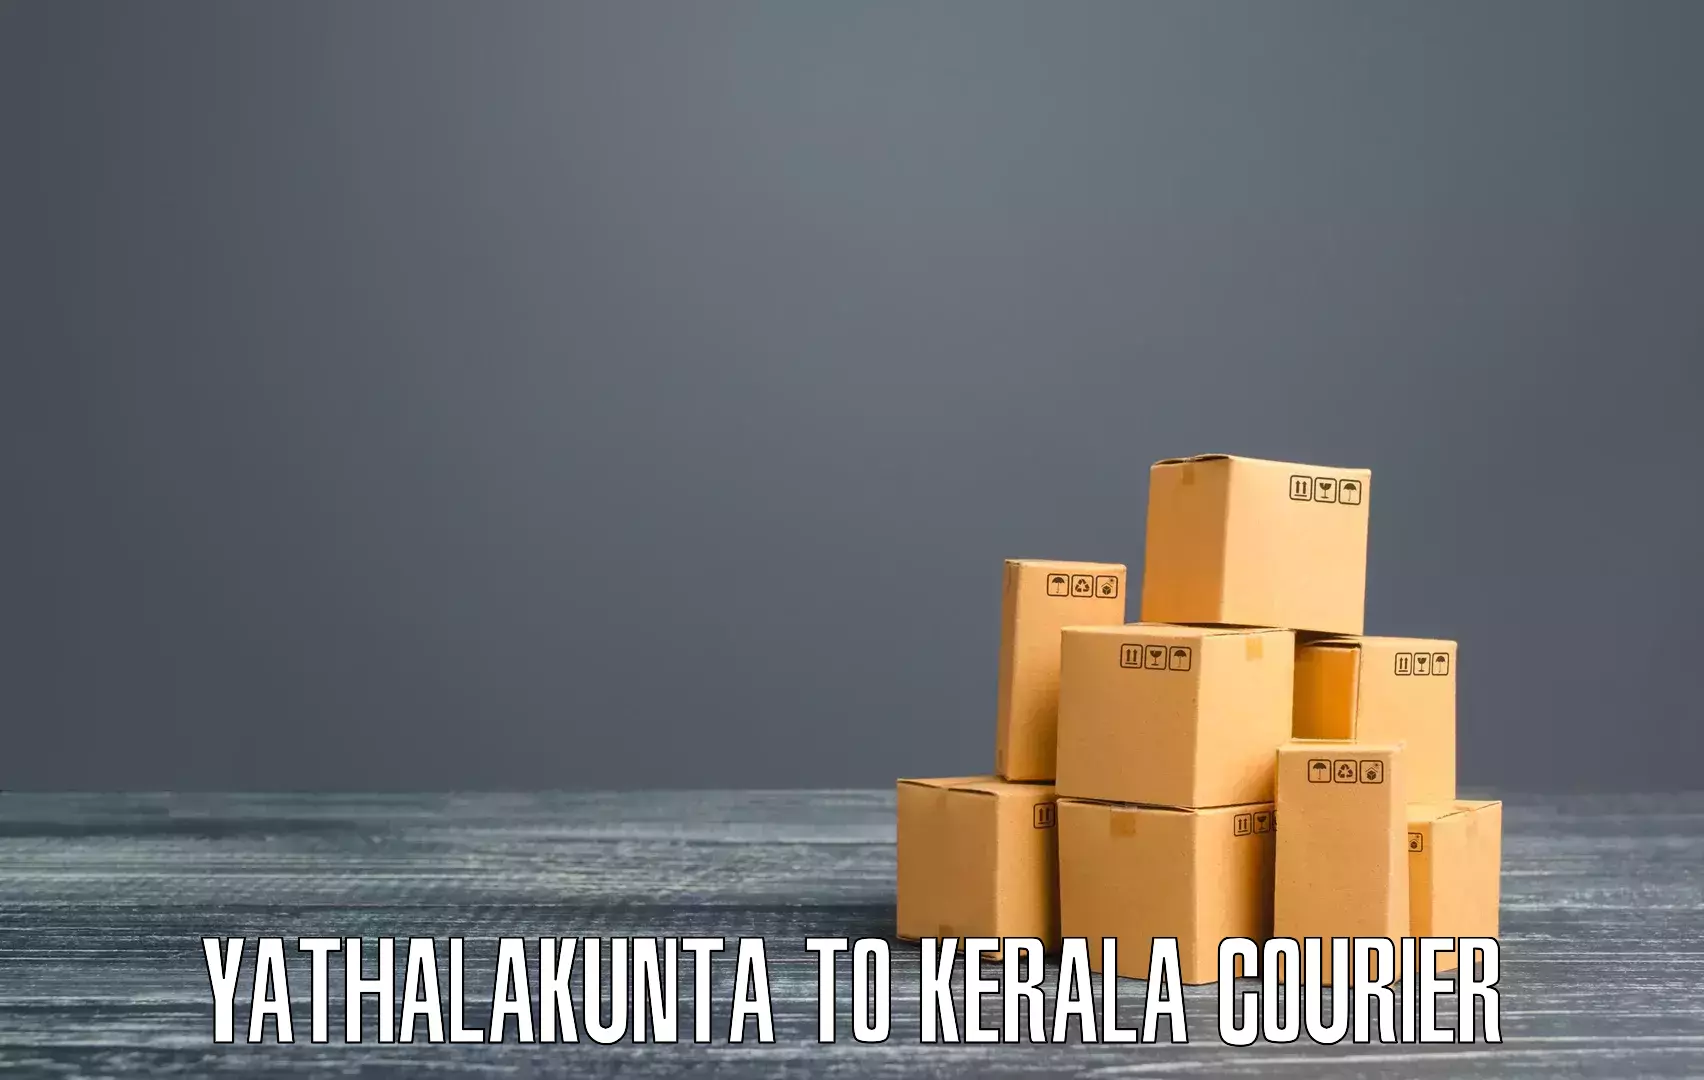 Local courier options Yathalakunta to Kallikkad